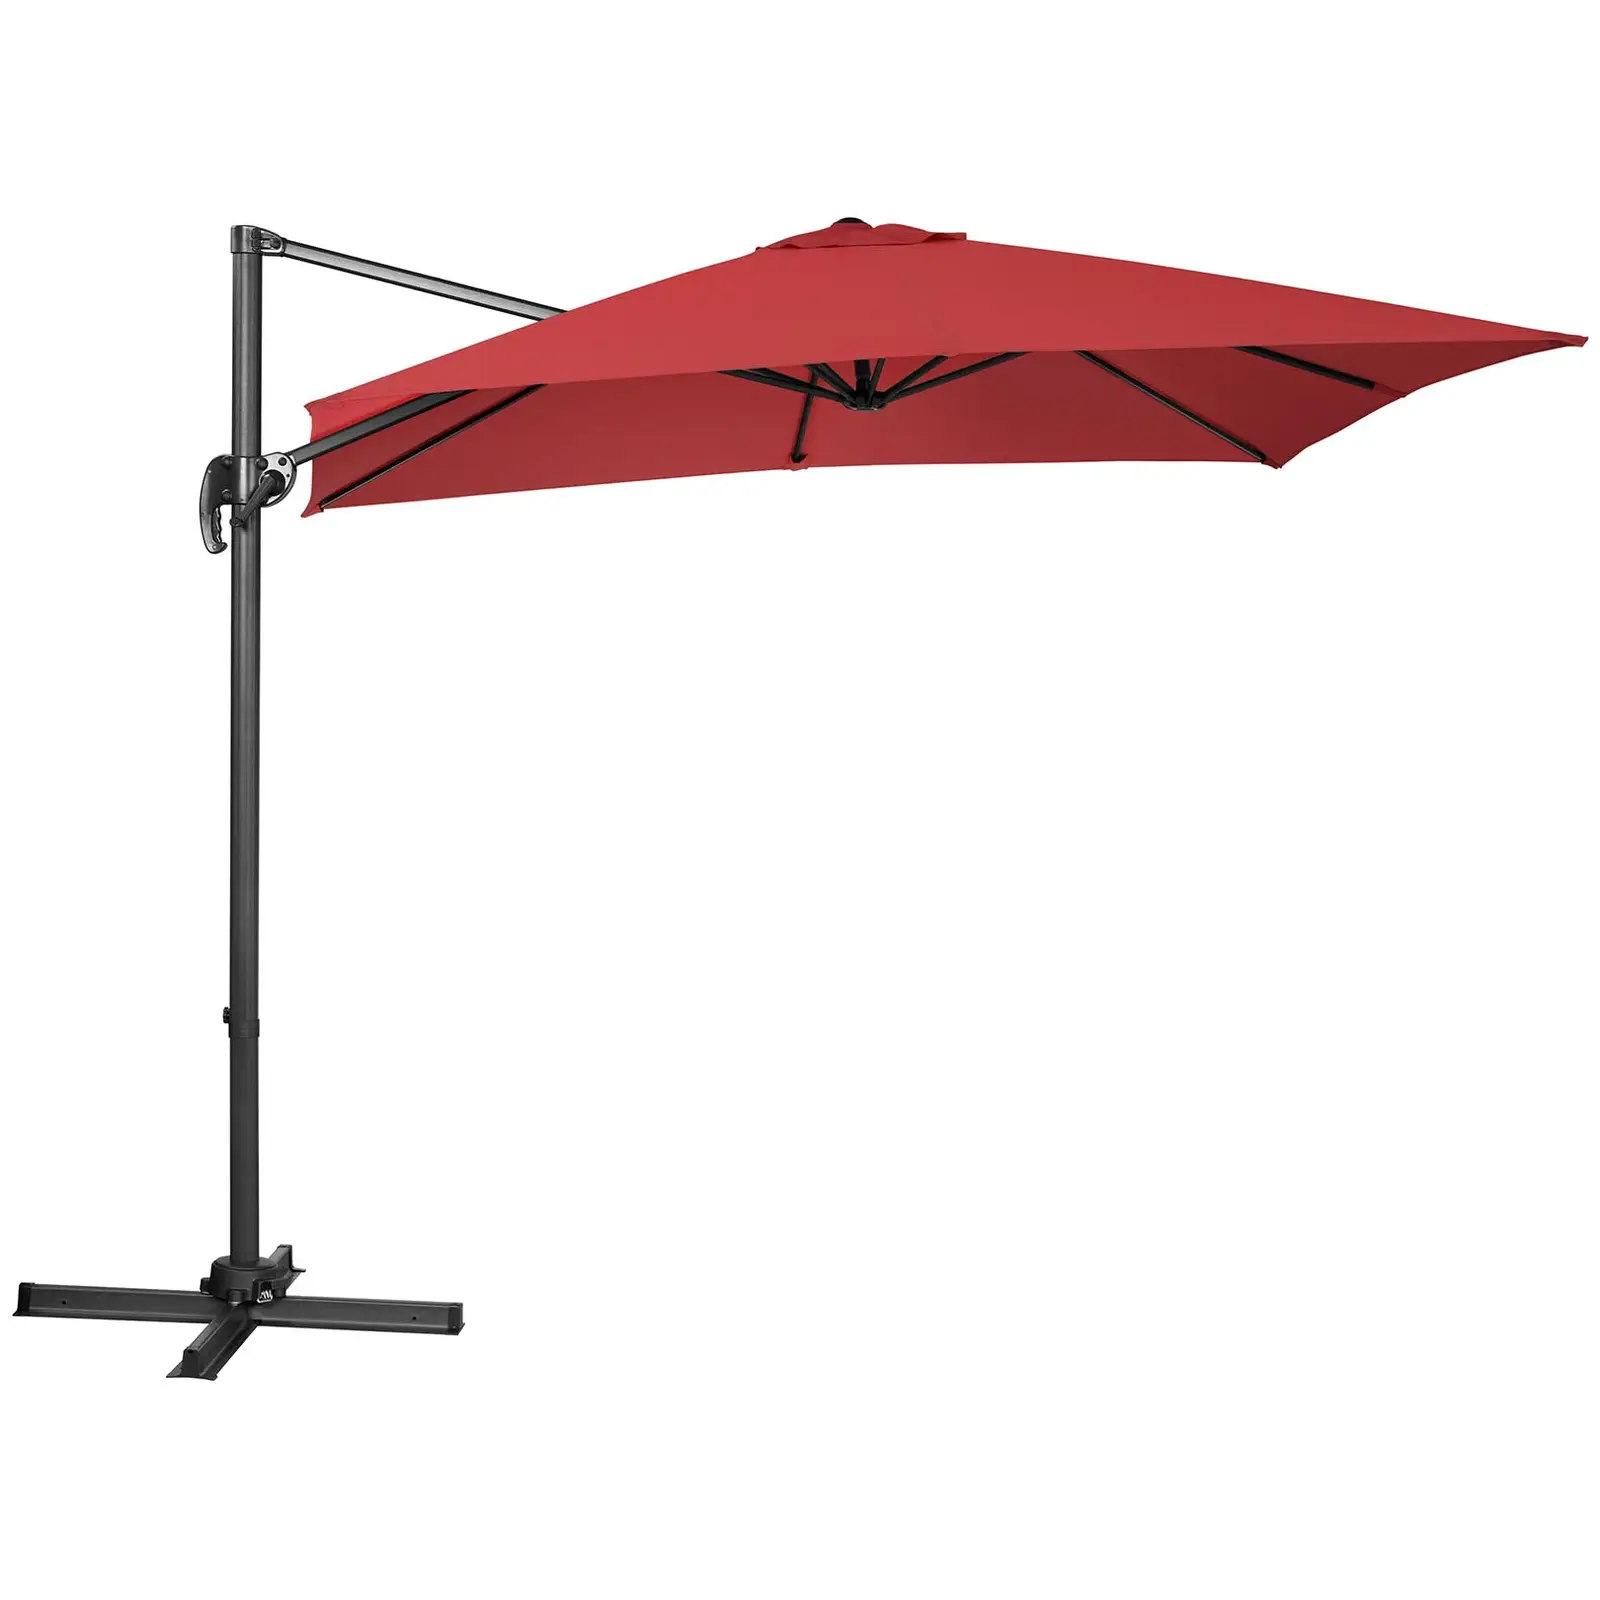 Aurinkovarjo - riippuva - viininpunainen - neliö - 250 x 250 cm - kääntyvä